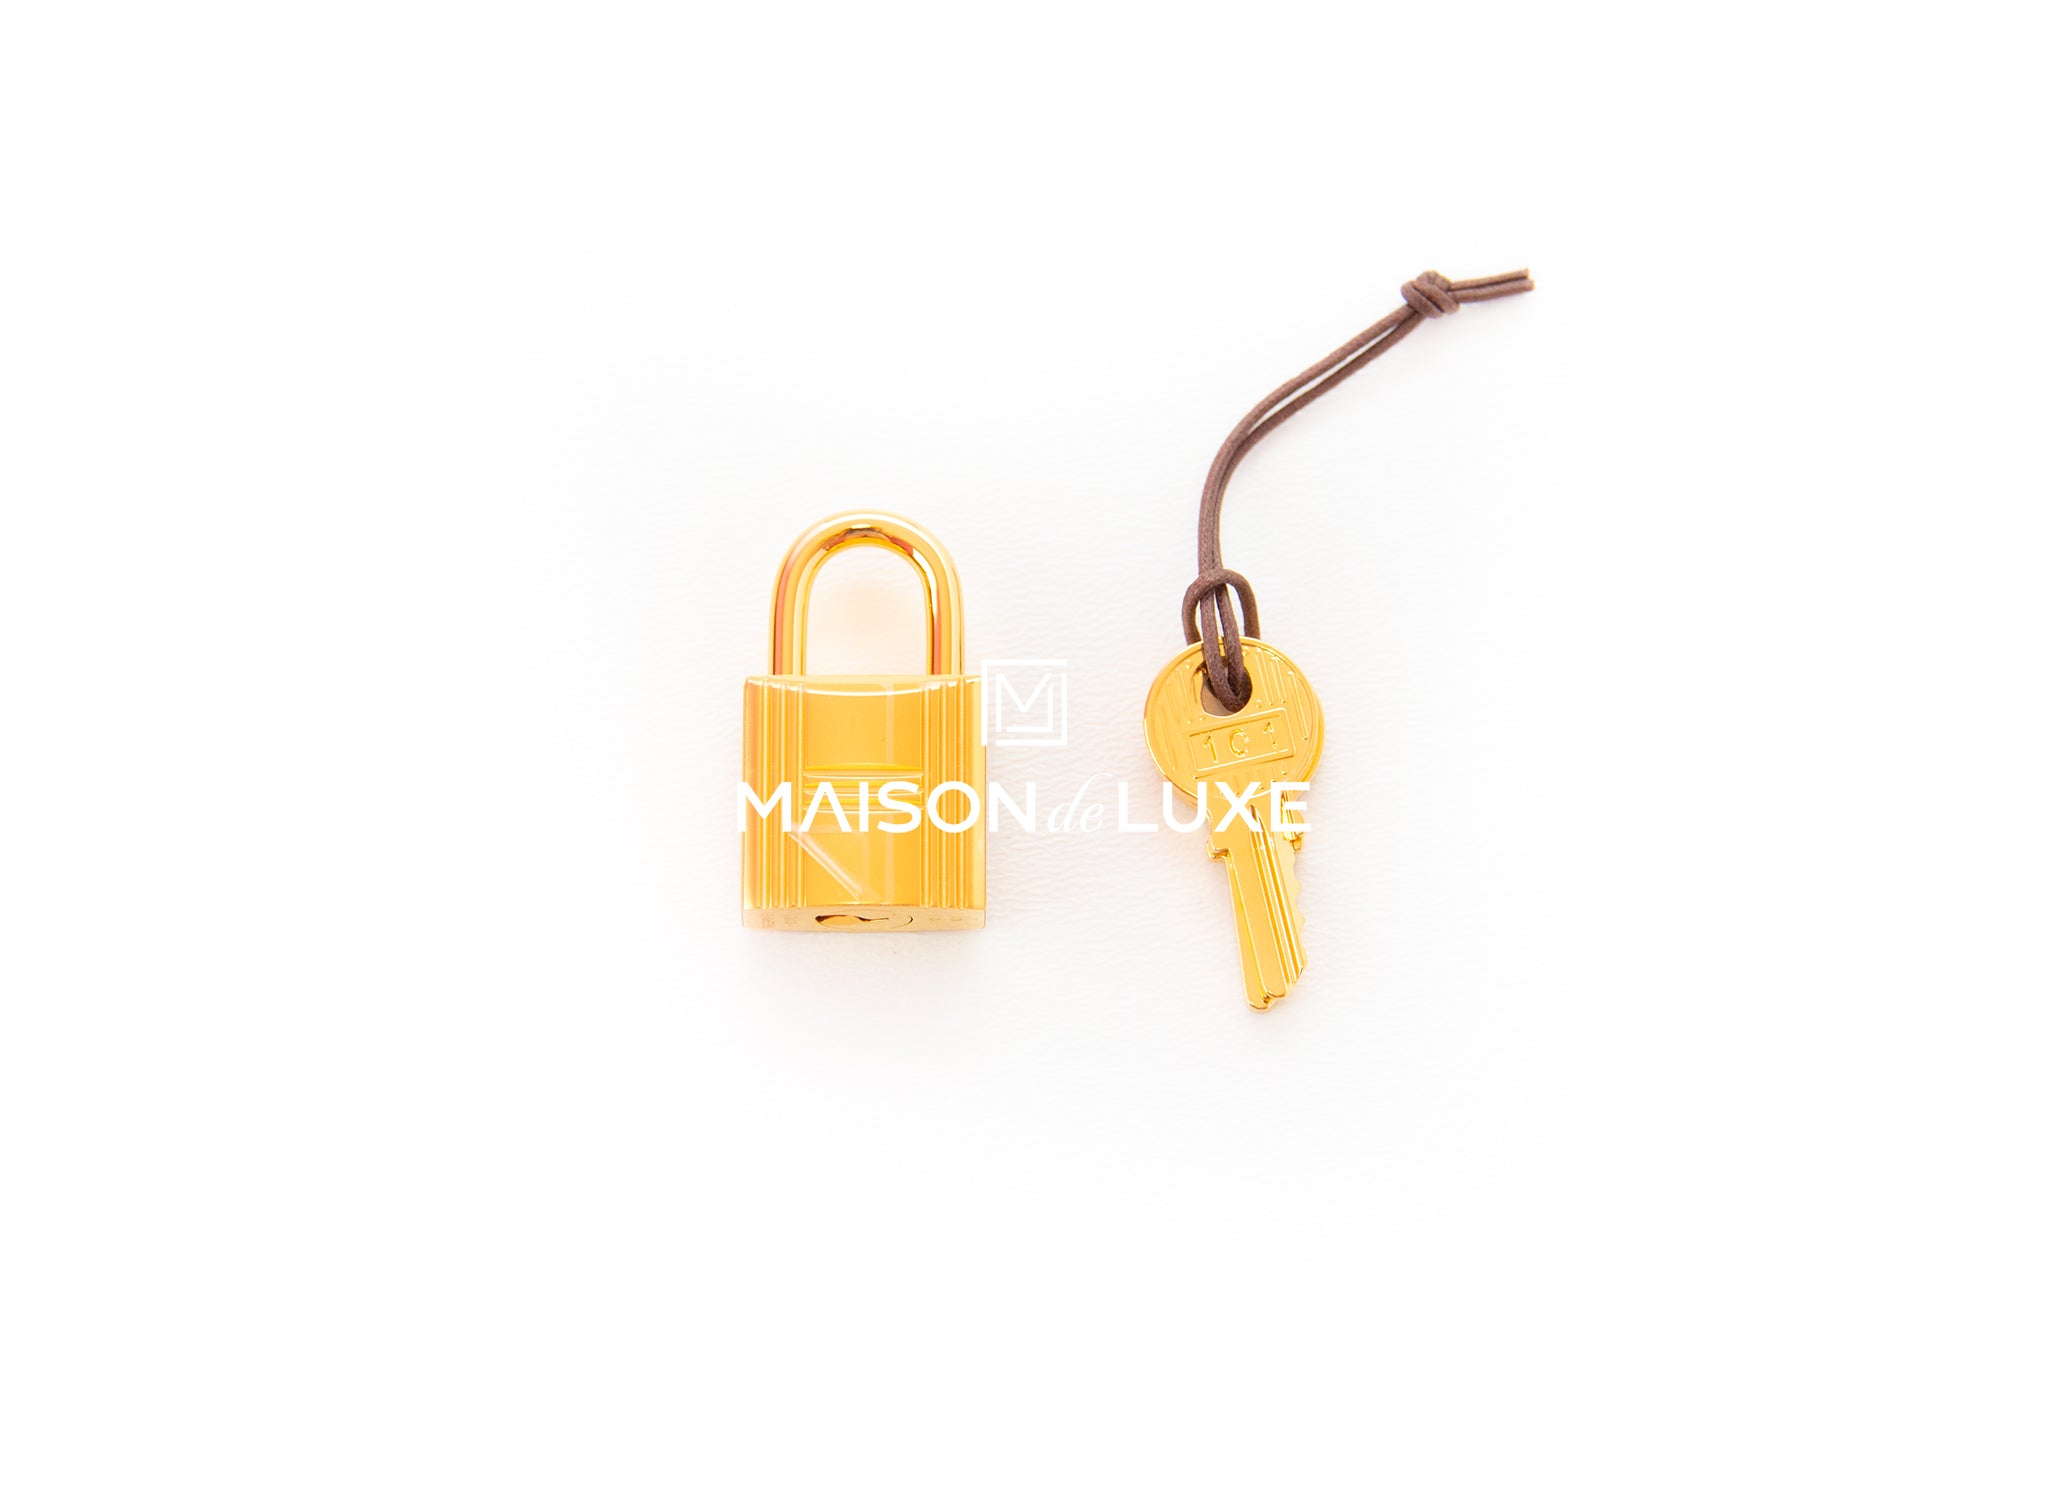 Hermes, Bags, Hermes Lock And Keys